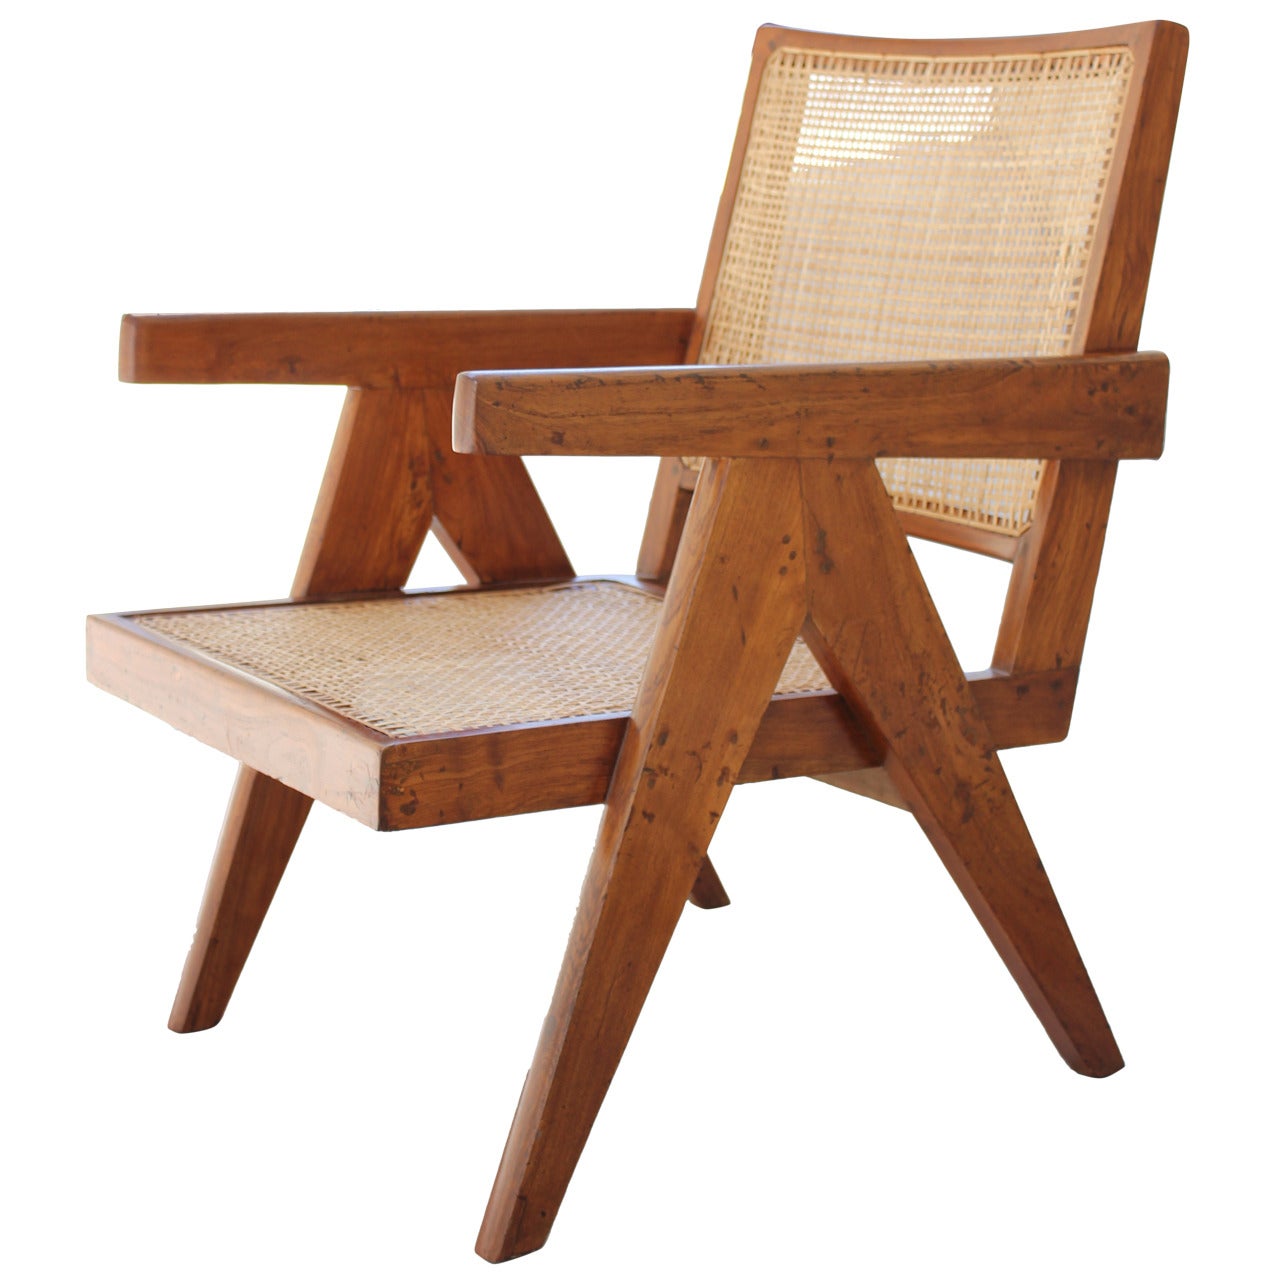 Pierre Jeanneret "Easy" Chair